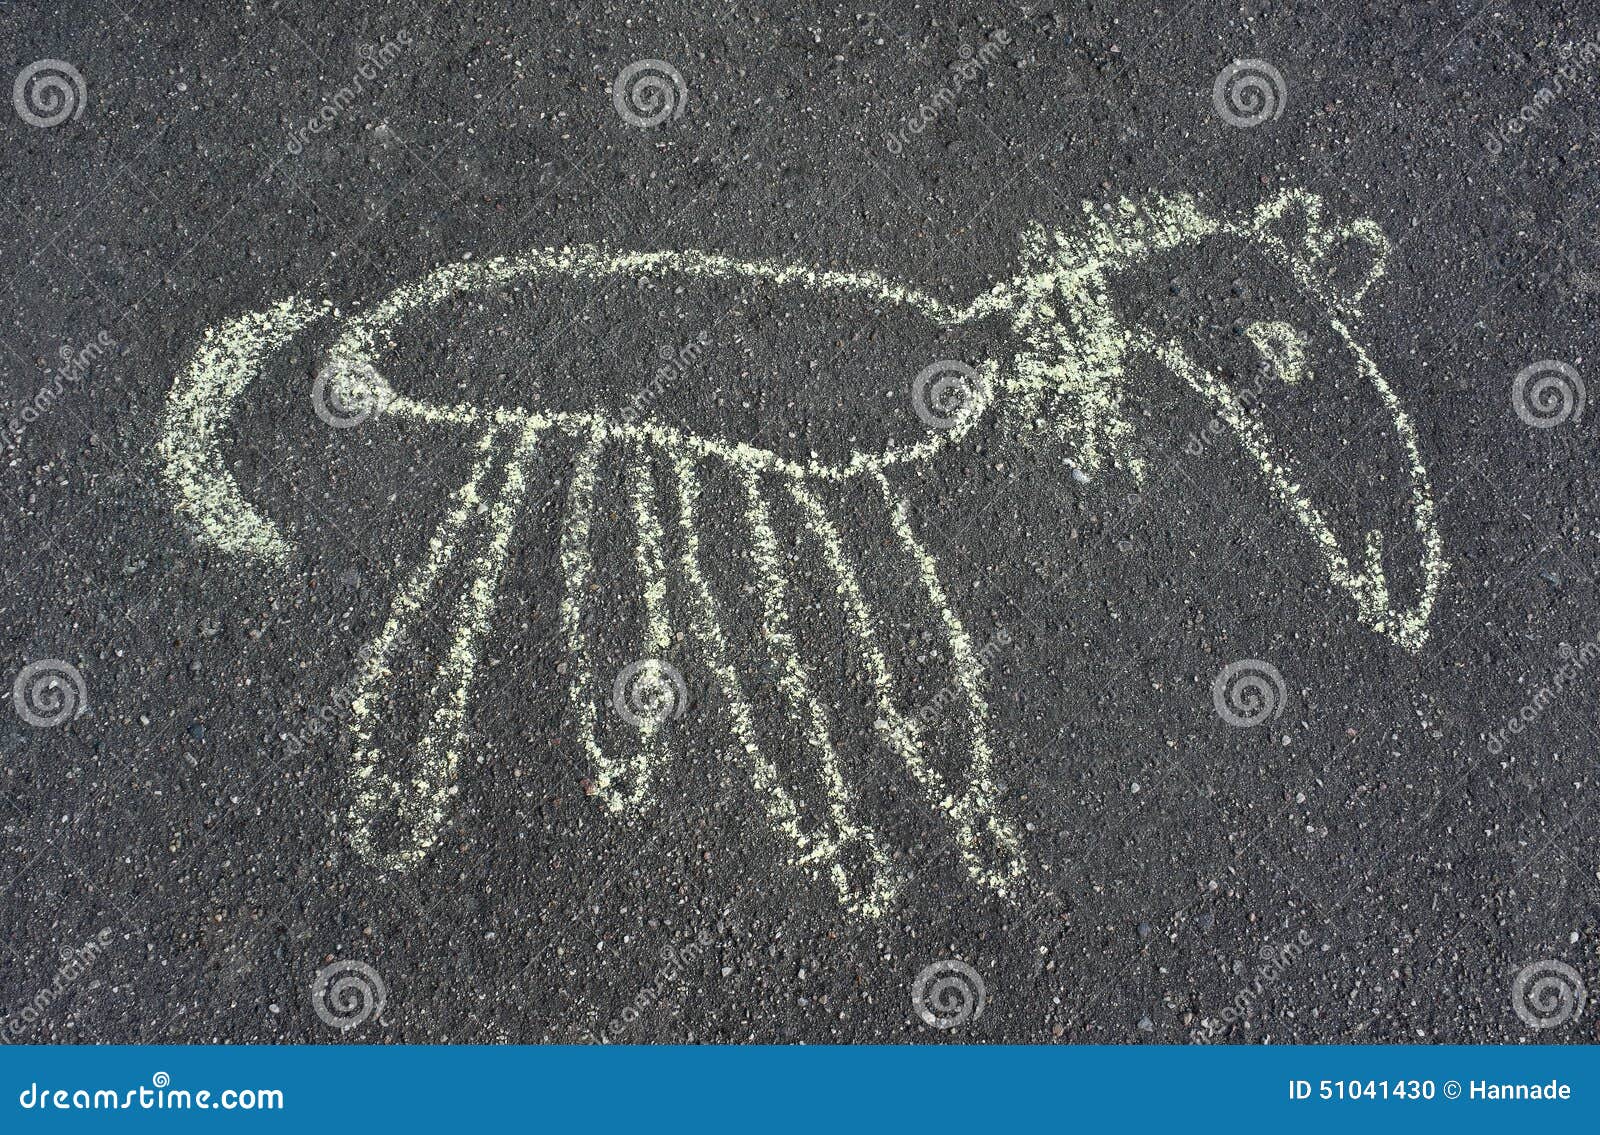 como desenhar um cavalo infantil